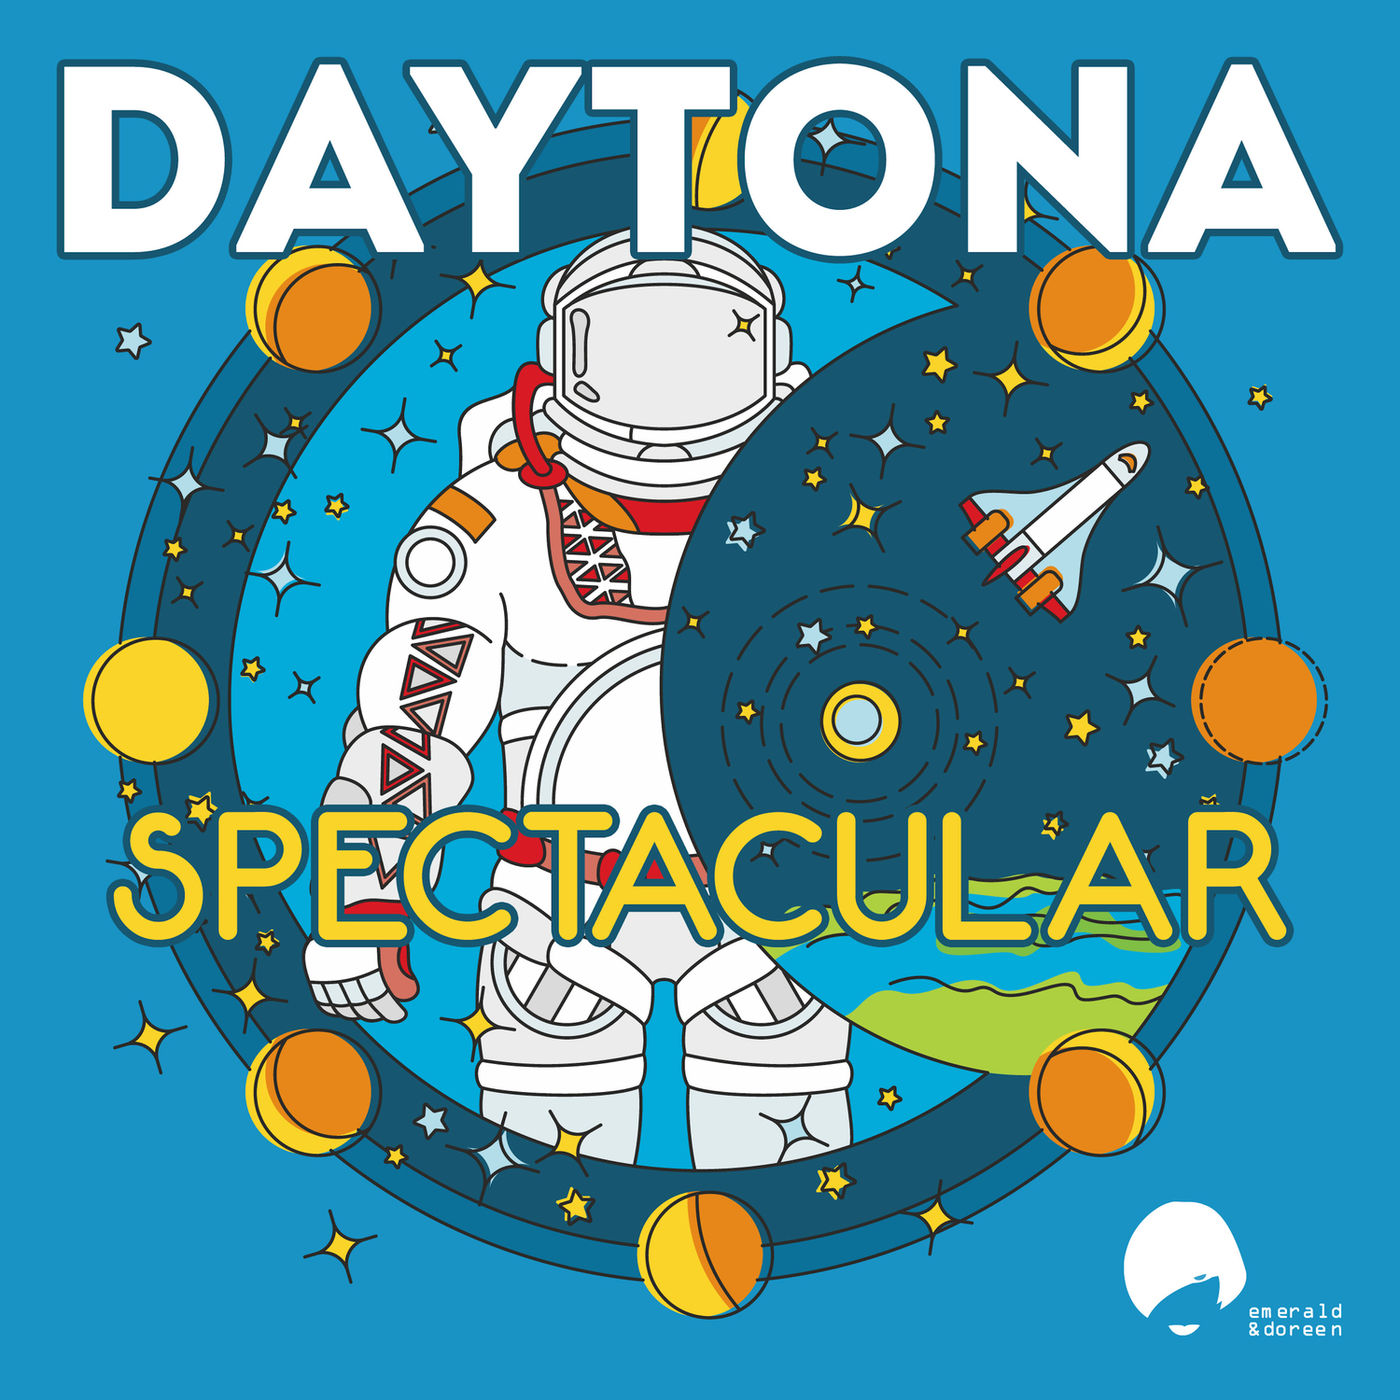 Daytona - Spectacular / Emerald & Doreen